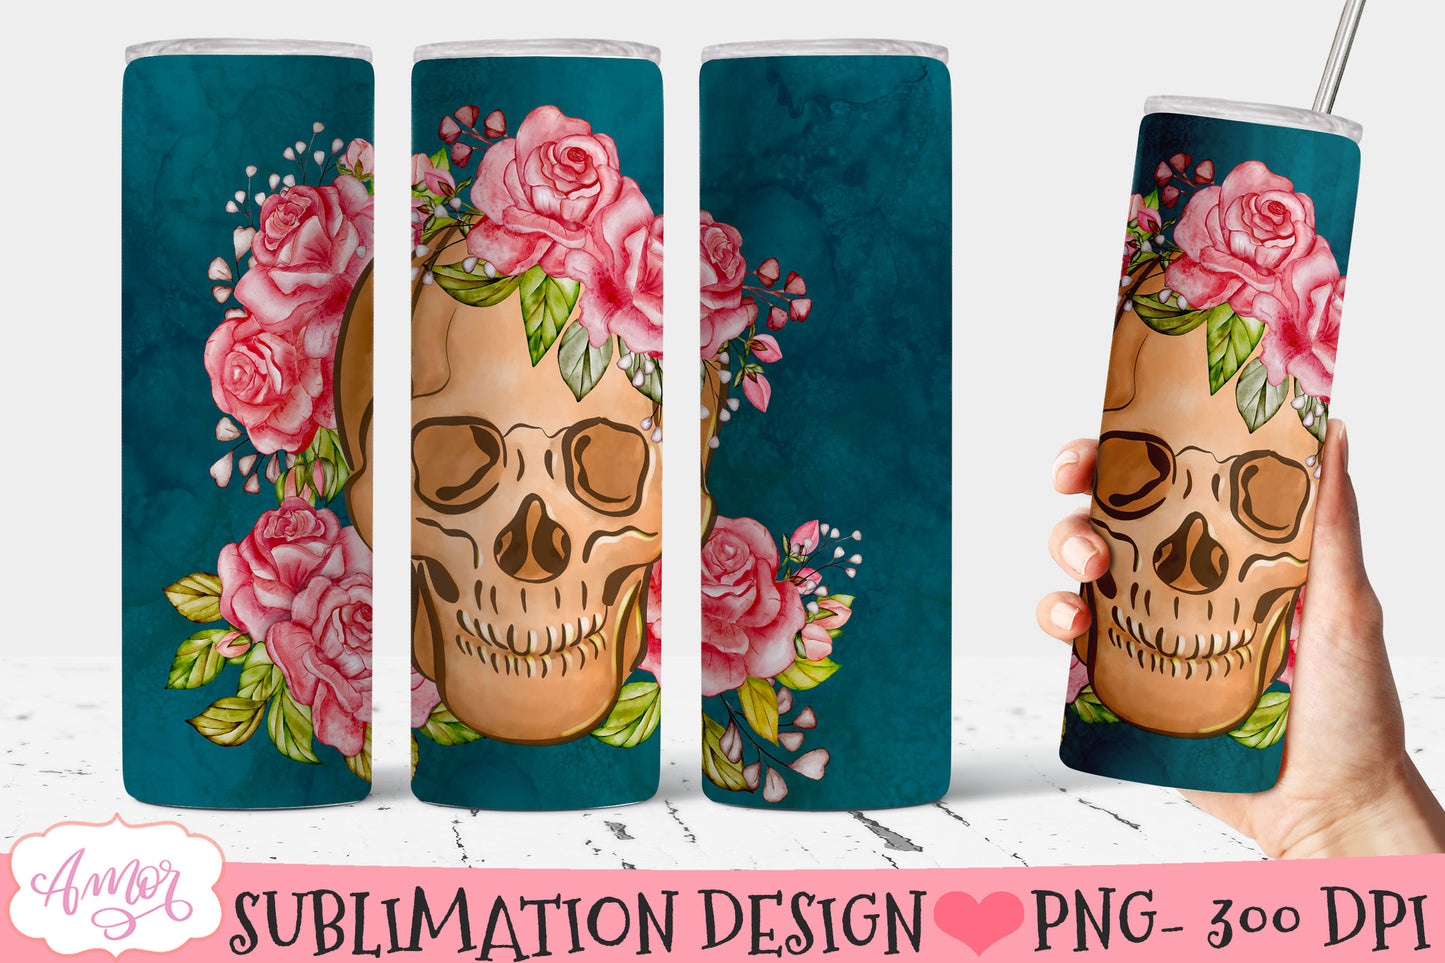 Floral Skull Tumbler wrap PNG for Sublimation for 20oz